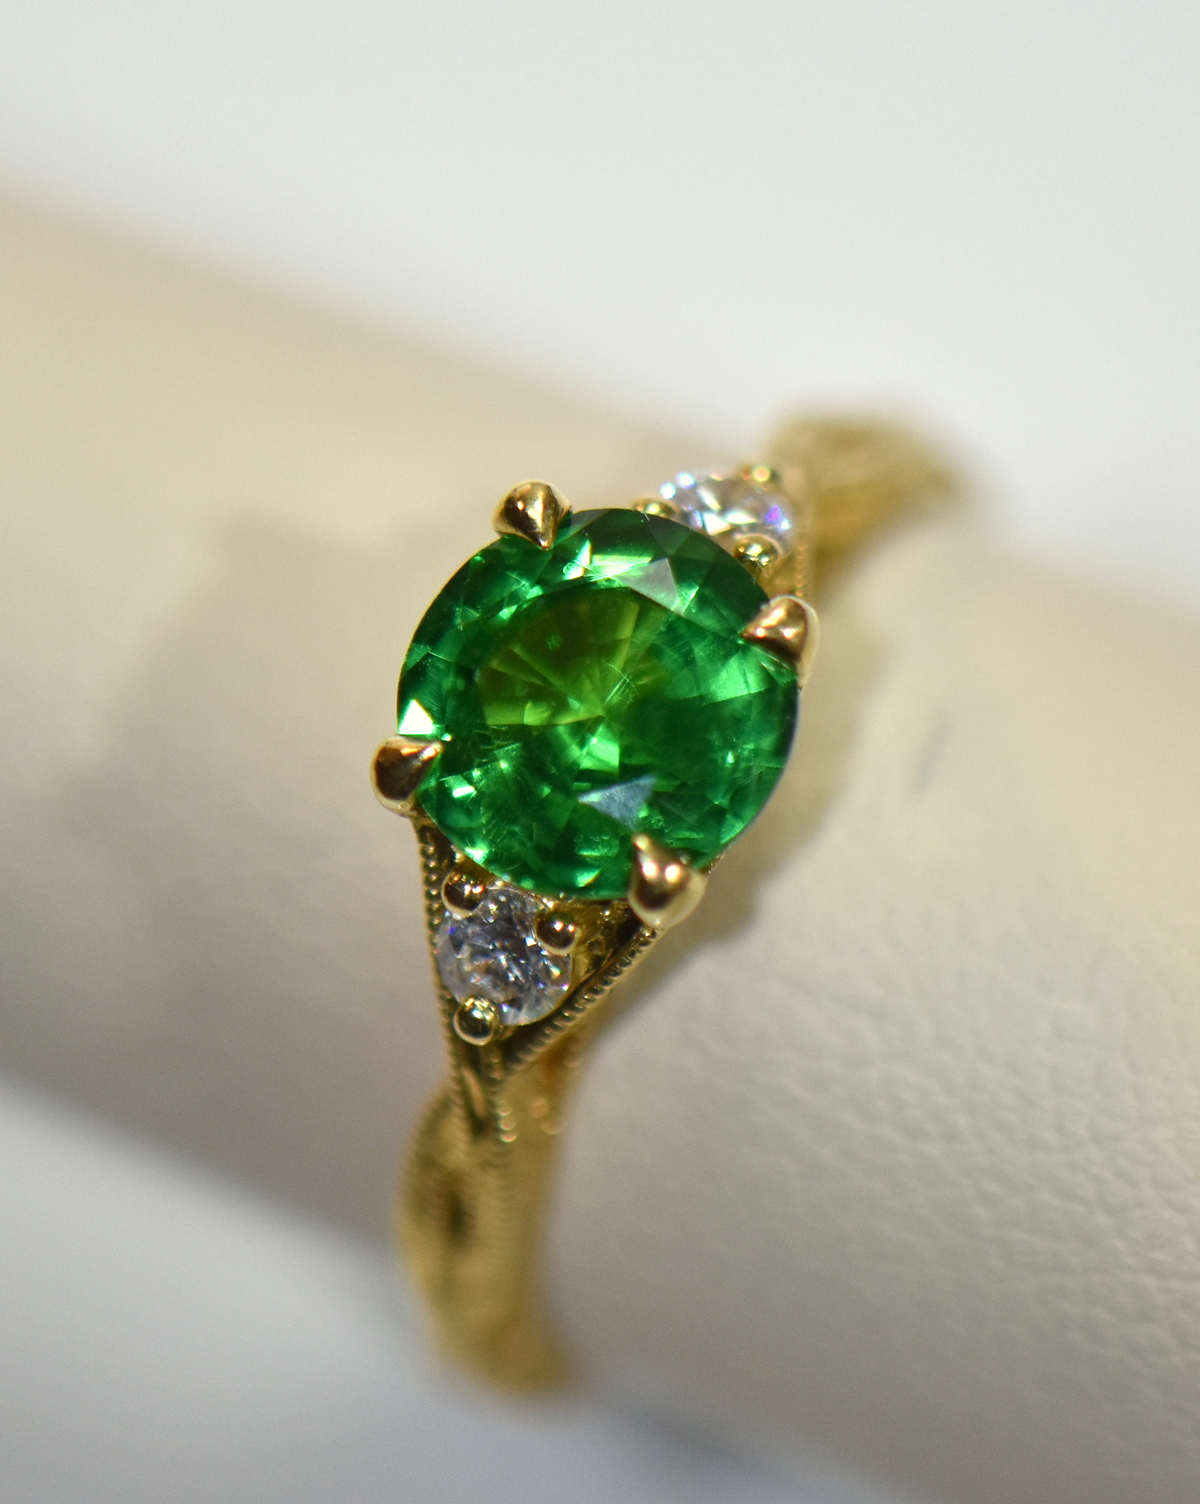 Buy Tsavorite Garnet Ring Halo Green Tsavorite Garnet Ring Cushion Cut Tsavorite  Garnet Ring 925 Sterling Silver Ring for Her Tsavorite Ring Online in India  - Etsy